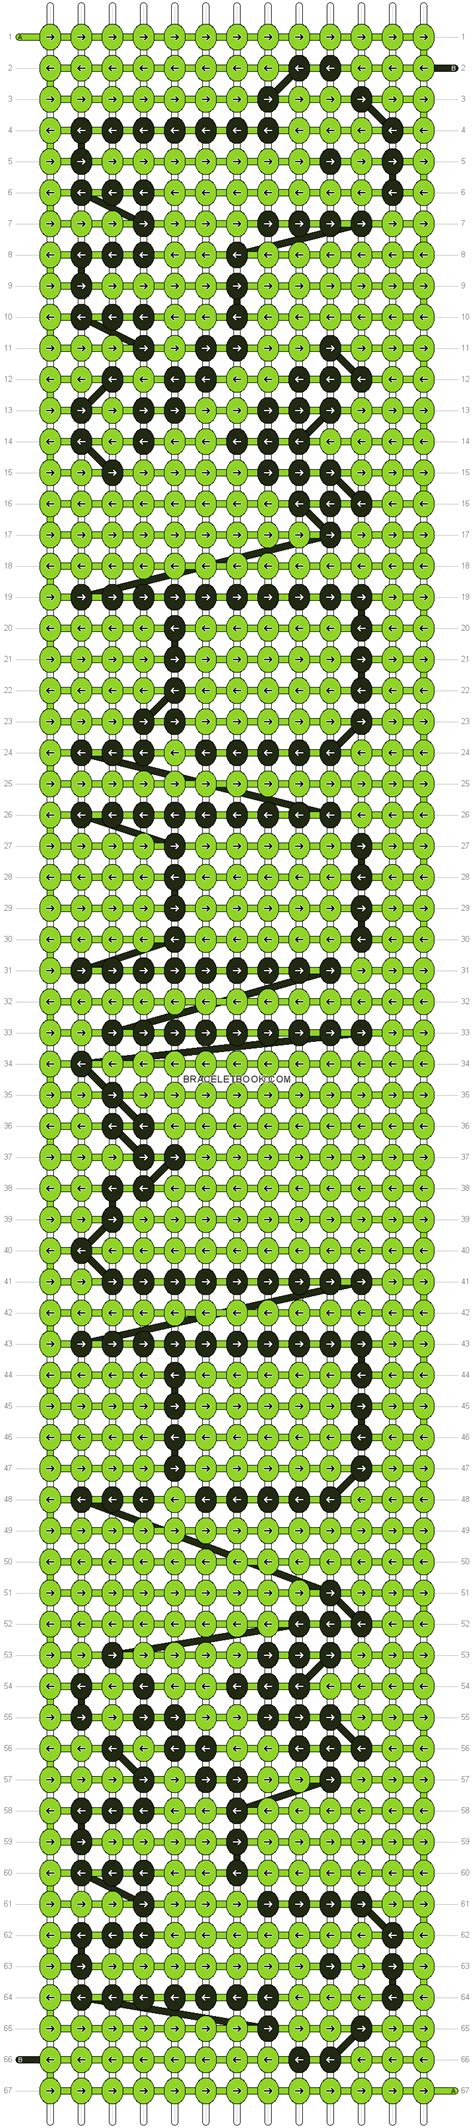 Alpha Friendship Bracelet Pattern 16485 Alpha